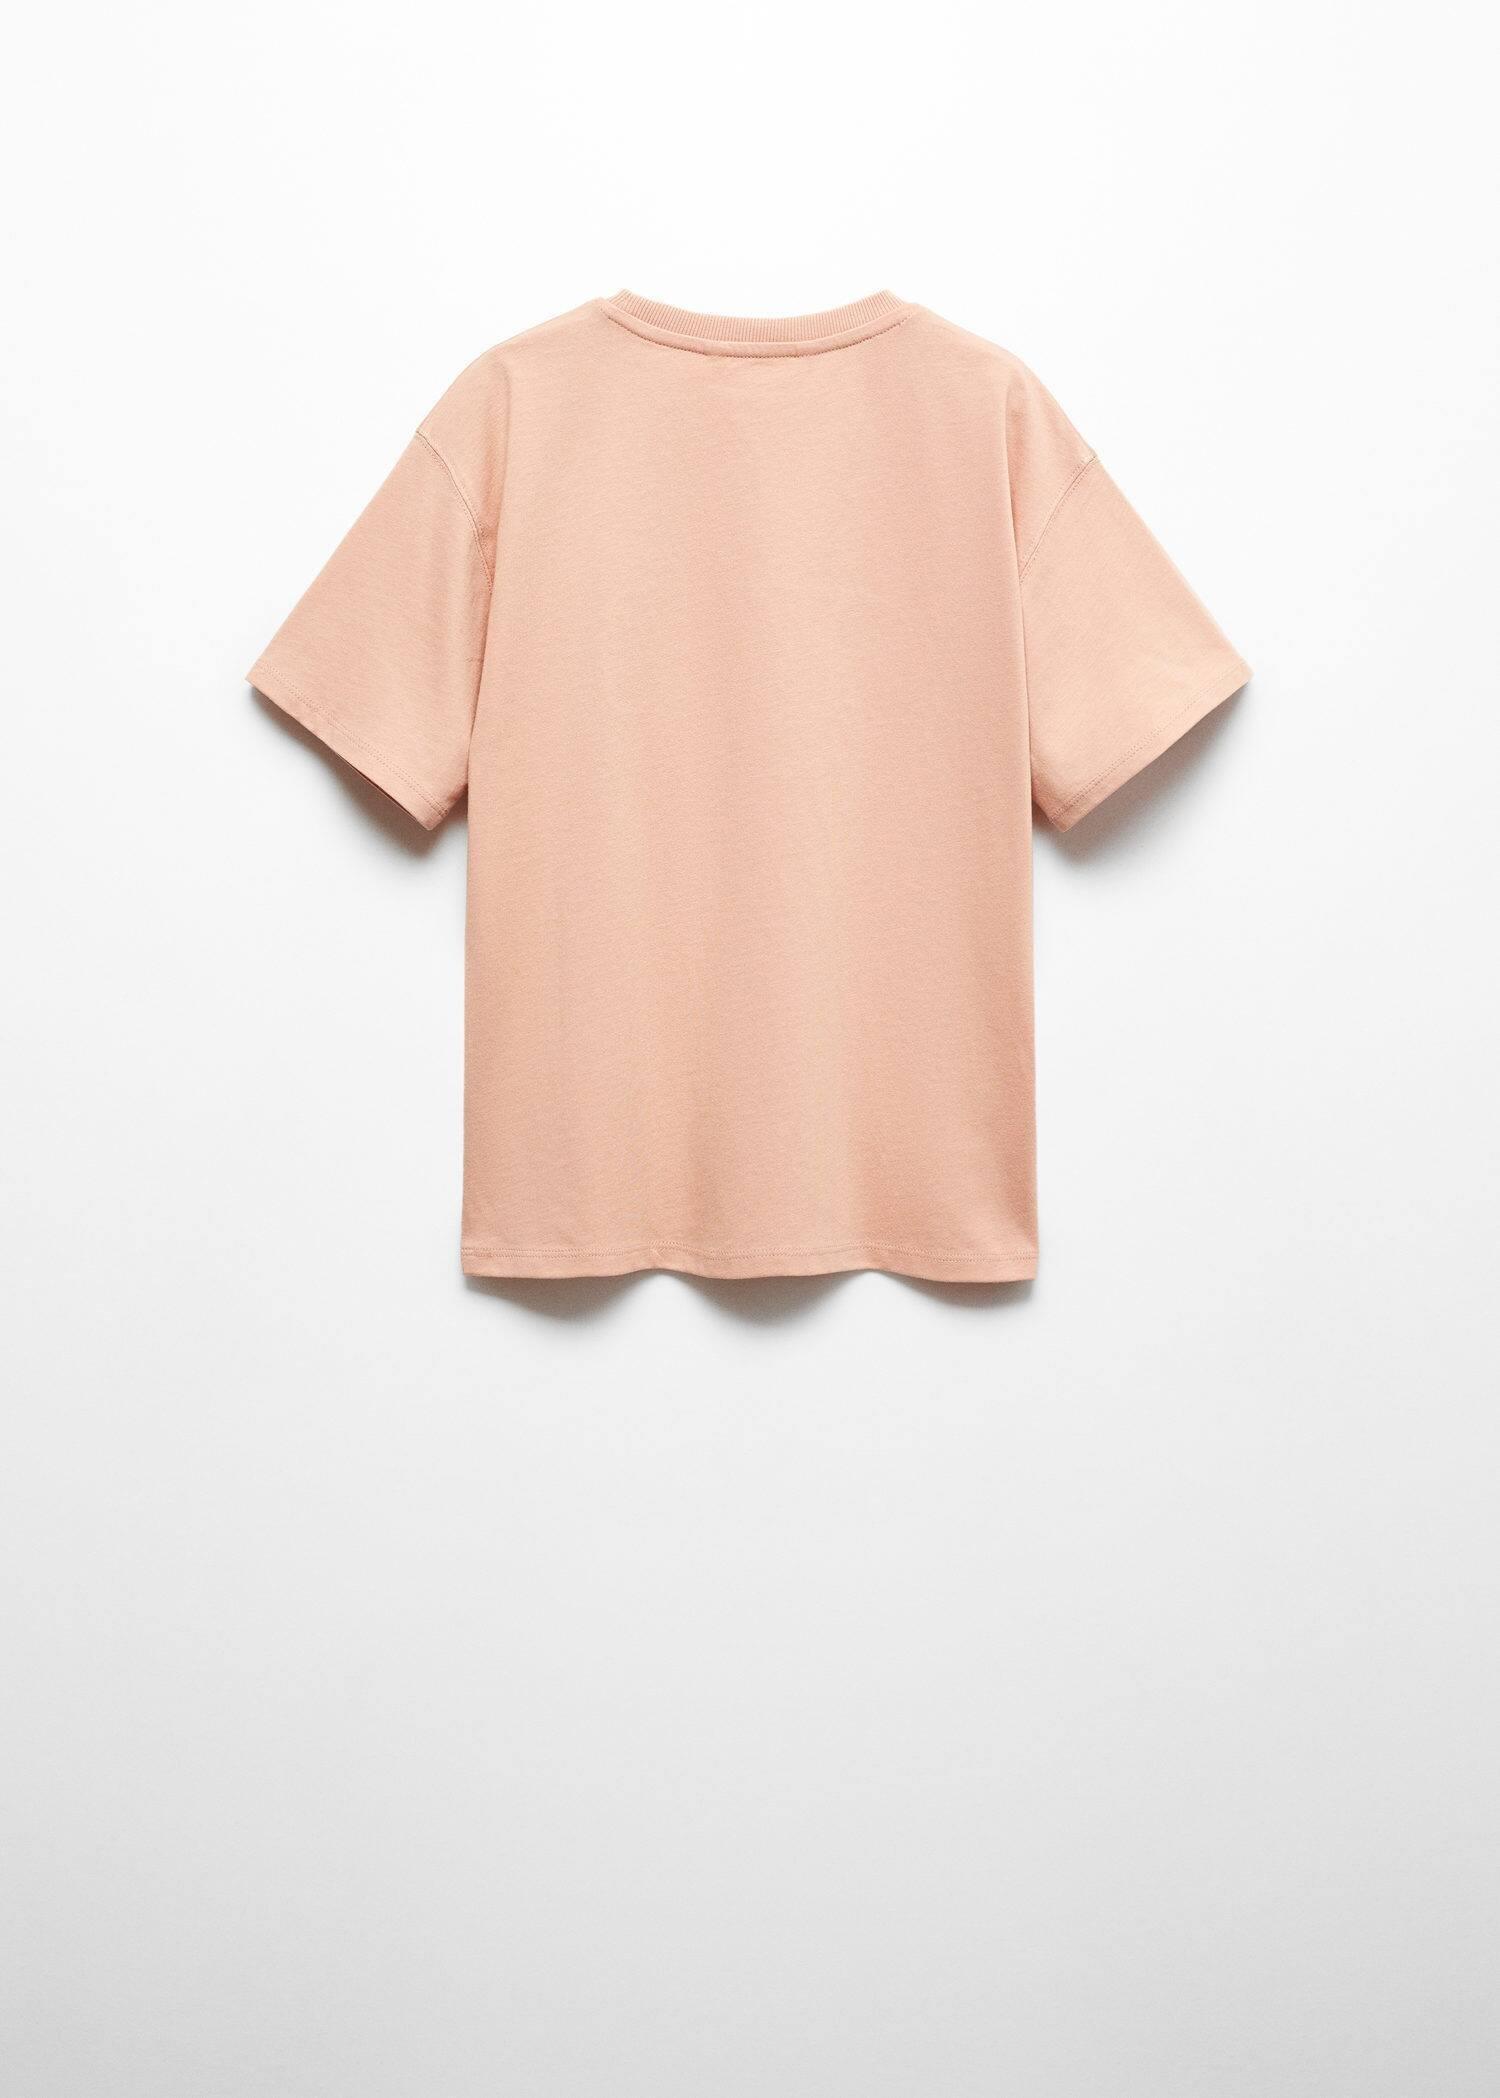 Mango - Orange Embossed Printed T-Shirt, Kids Boys